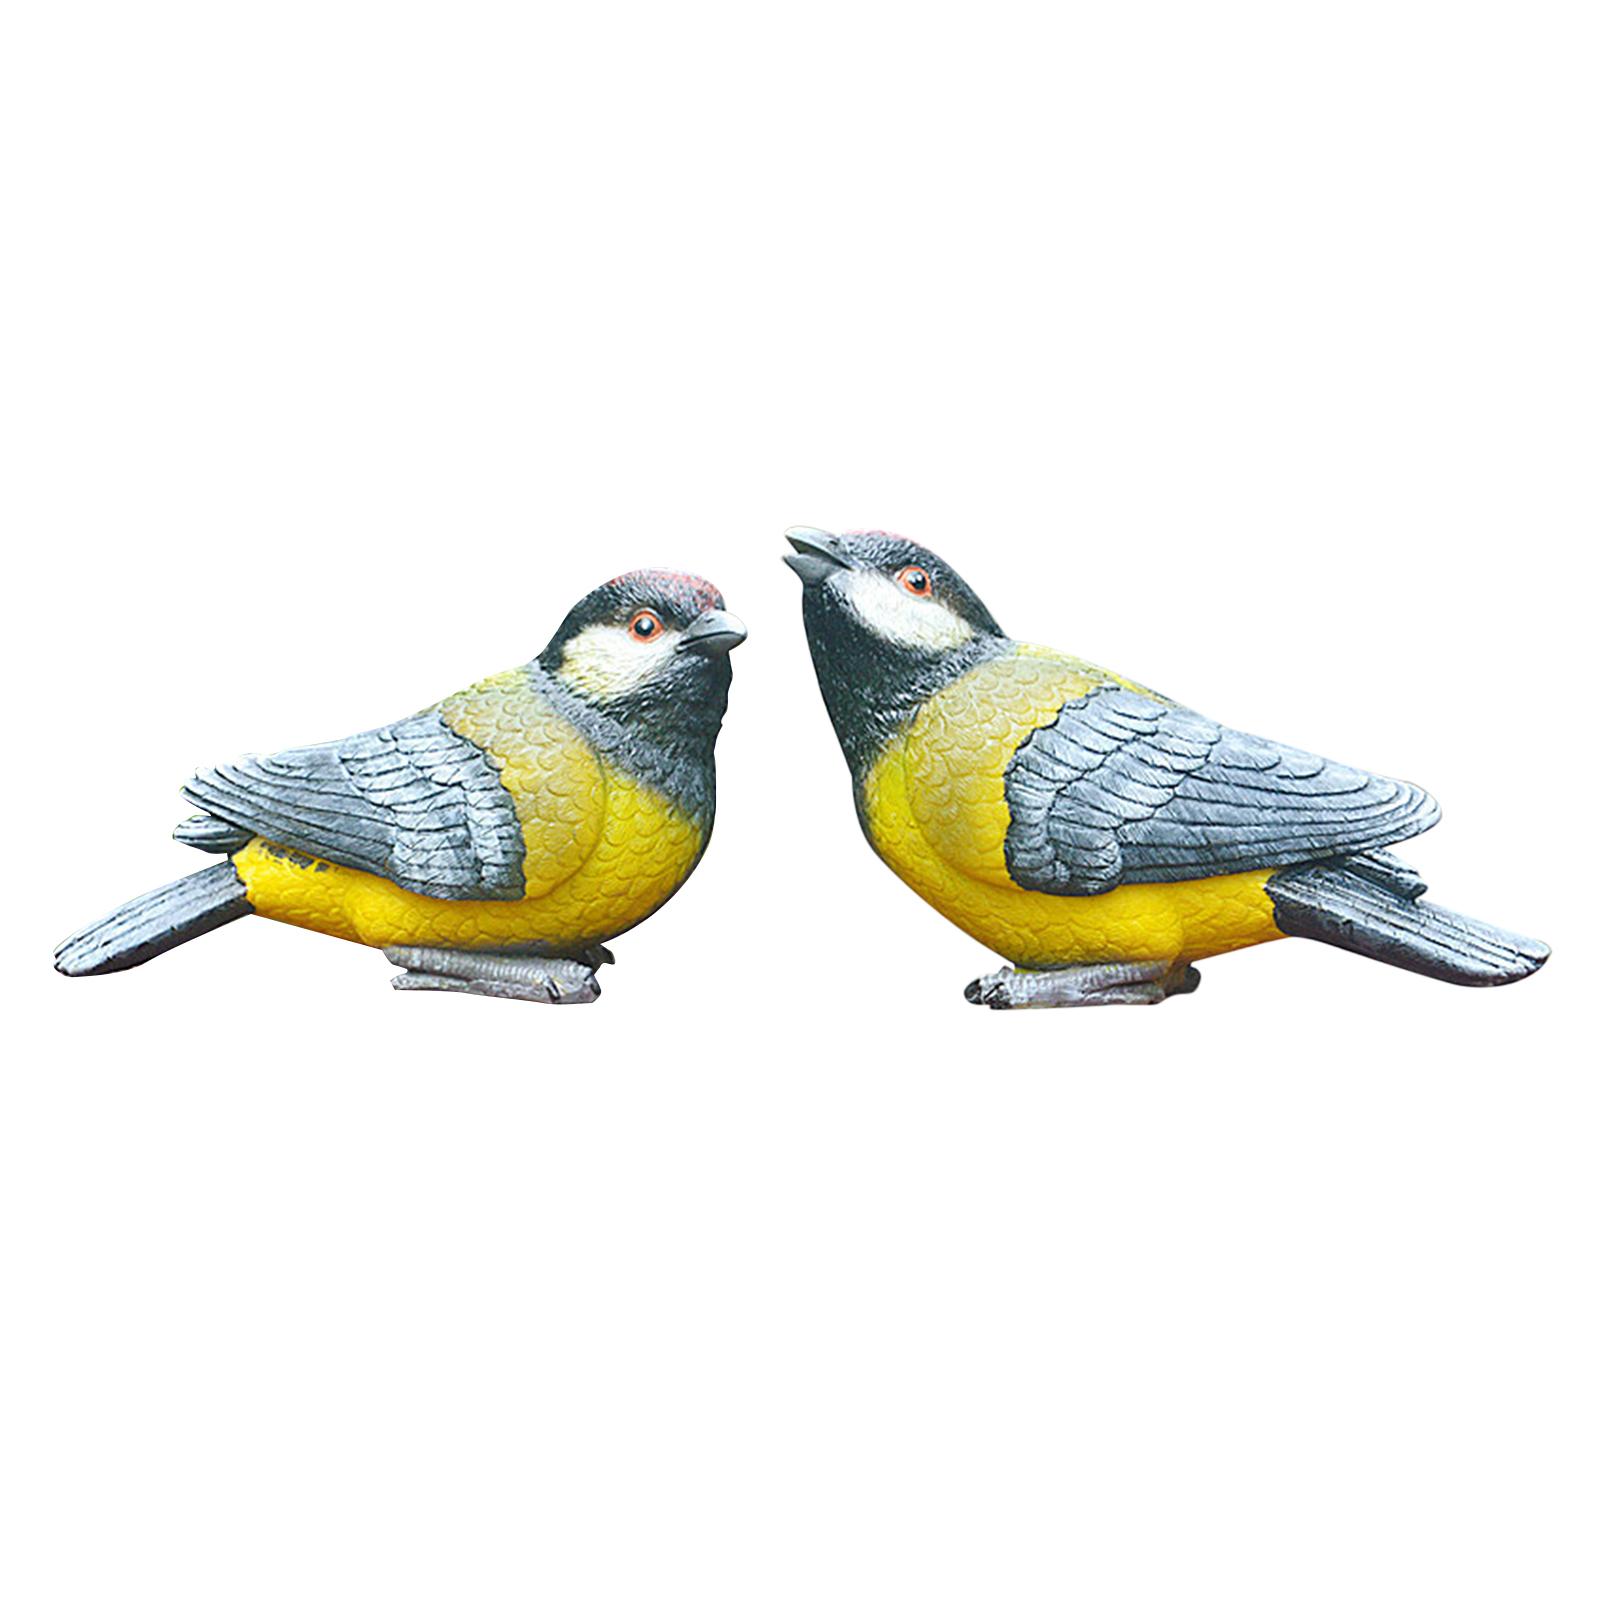 2x Bird Statues Decoration Miniature for Desktop Lawn Outdoor Indoor Yellow